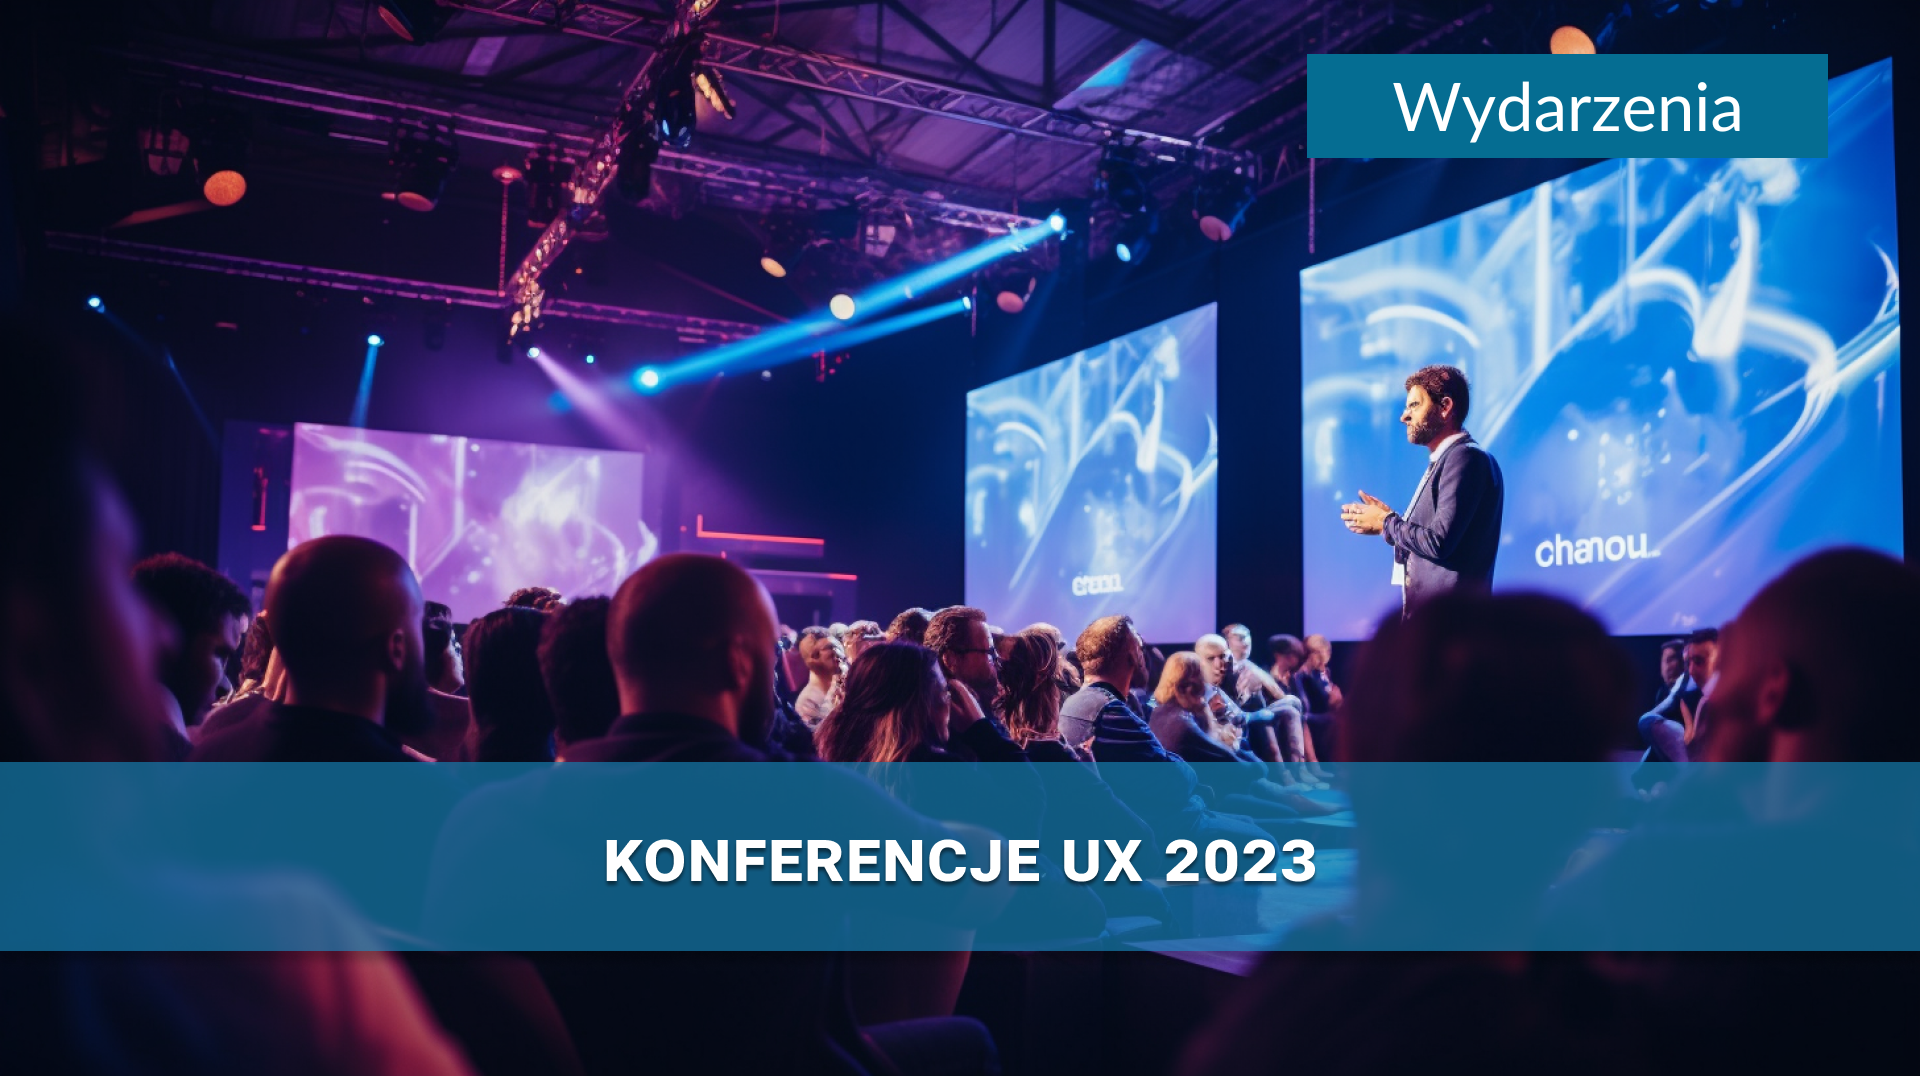 Konferencje dla projektantów UX 2023, na które warto się wybrać